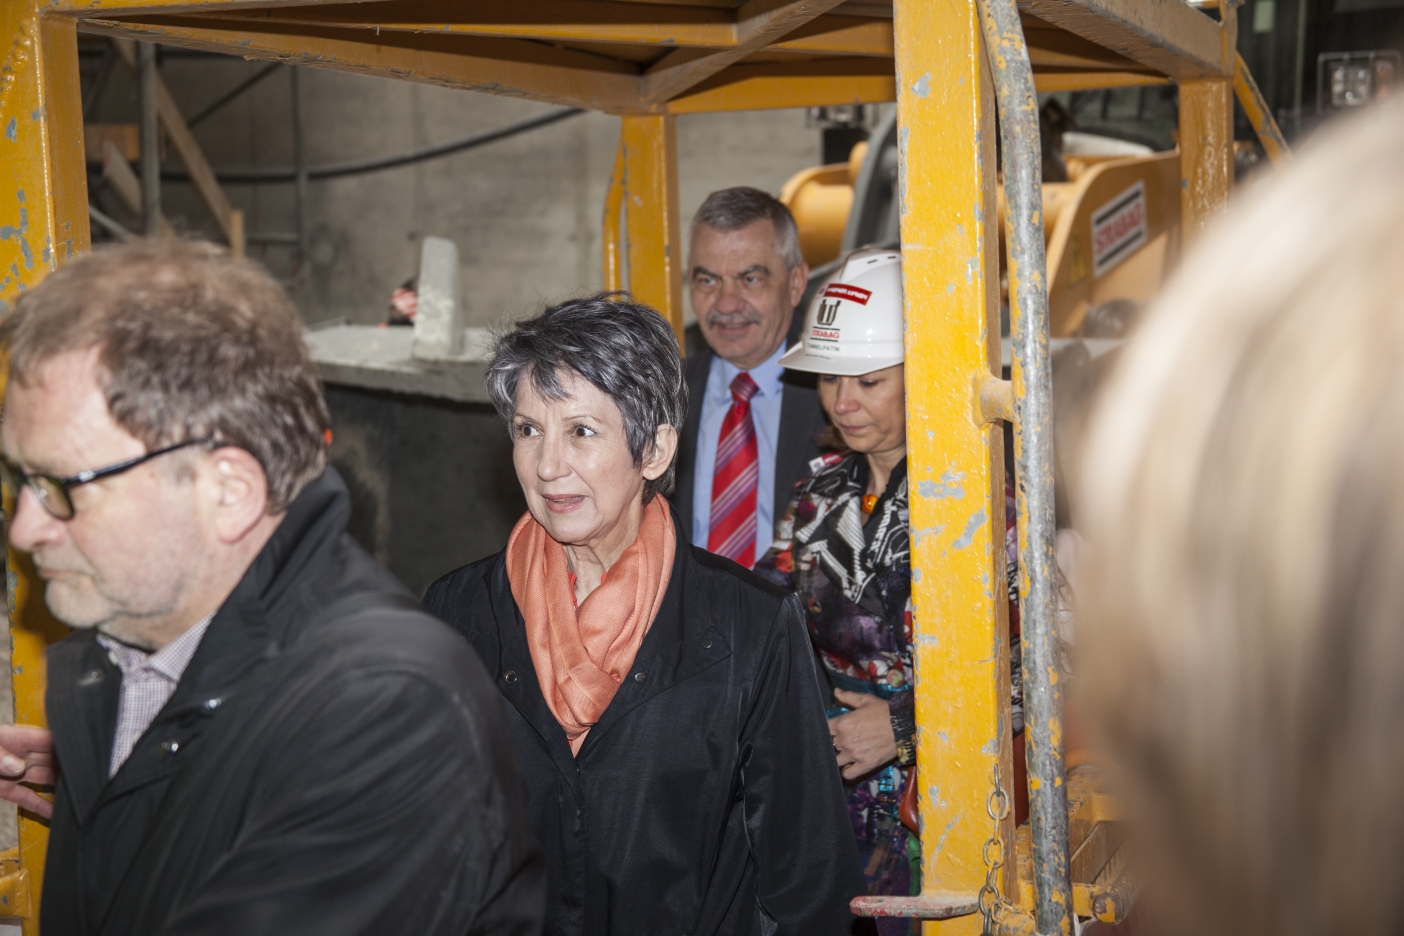 Tunnelanschlag in dem rund 30 Meter unter der A23 verlaufenden Tunnel bei der künftigen U1-Station Altes Landgut.

Tunnelpatin der künftigen Station Altes Landgut ist Nationalratspräsidentin Barbara Prammer.